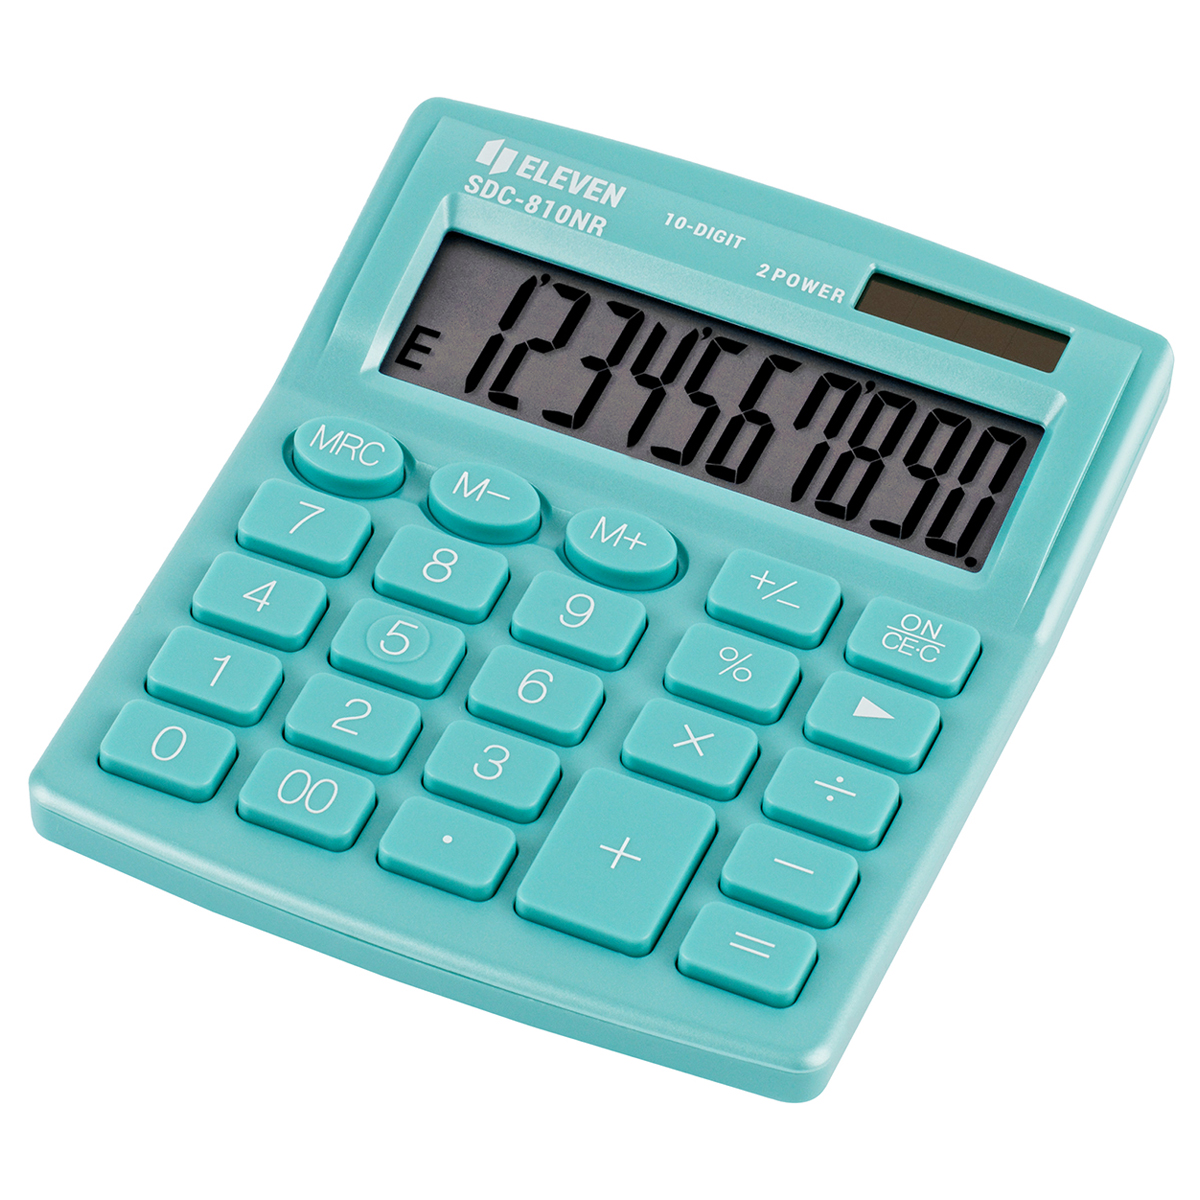 Калькулятор настольный Eleven SDC-810NR-GN, 10 разрядов, двойное питание, 127*105*21мм,